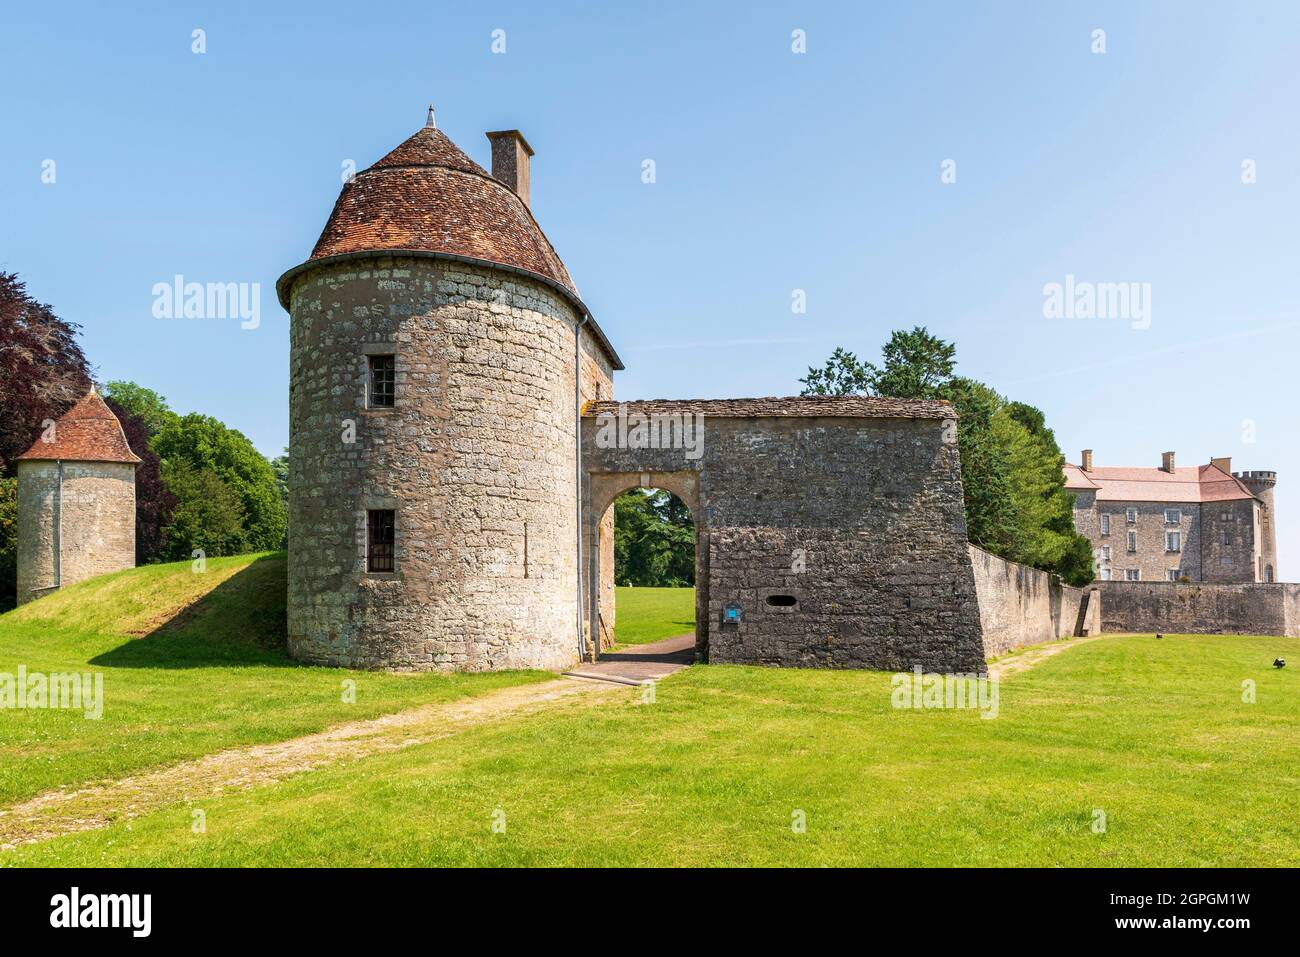 Francia, Haute Saone, Ray sur Saone, castillo Ray sur Saone, torre antigua, fortificación, entrada a la antigua granja Foto de stock